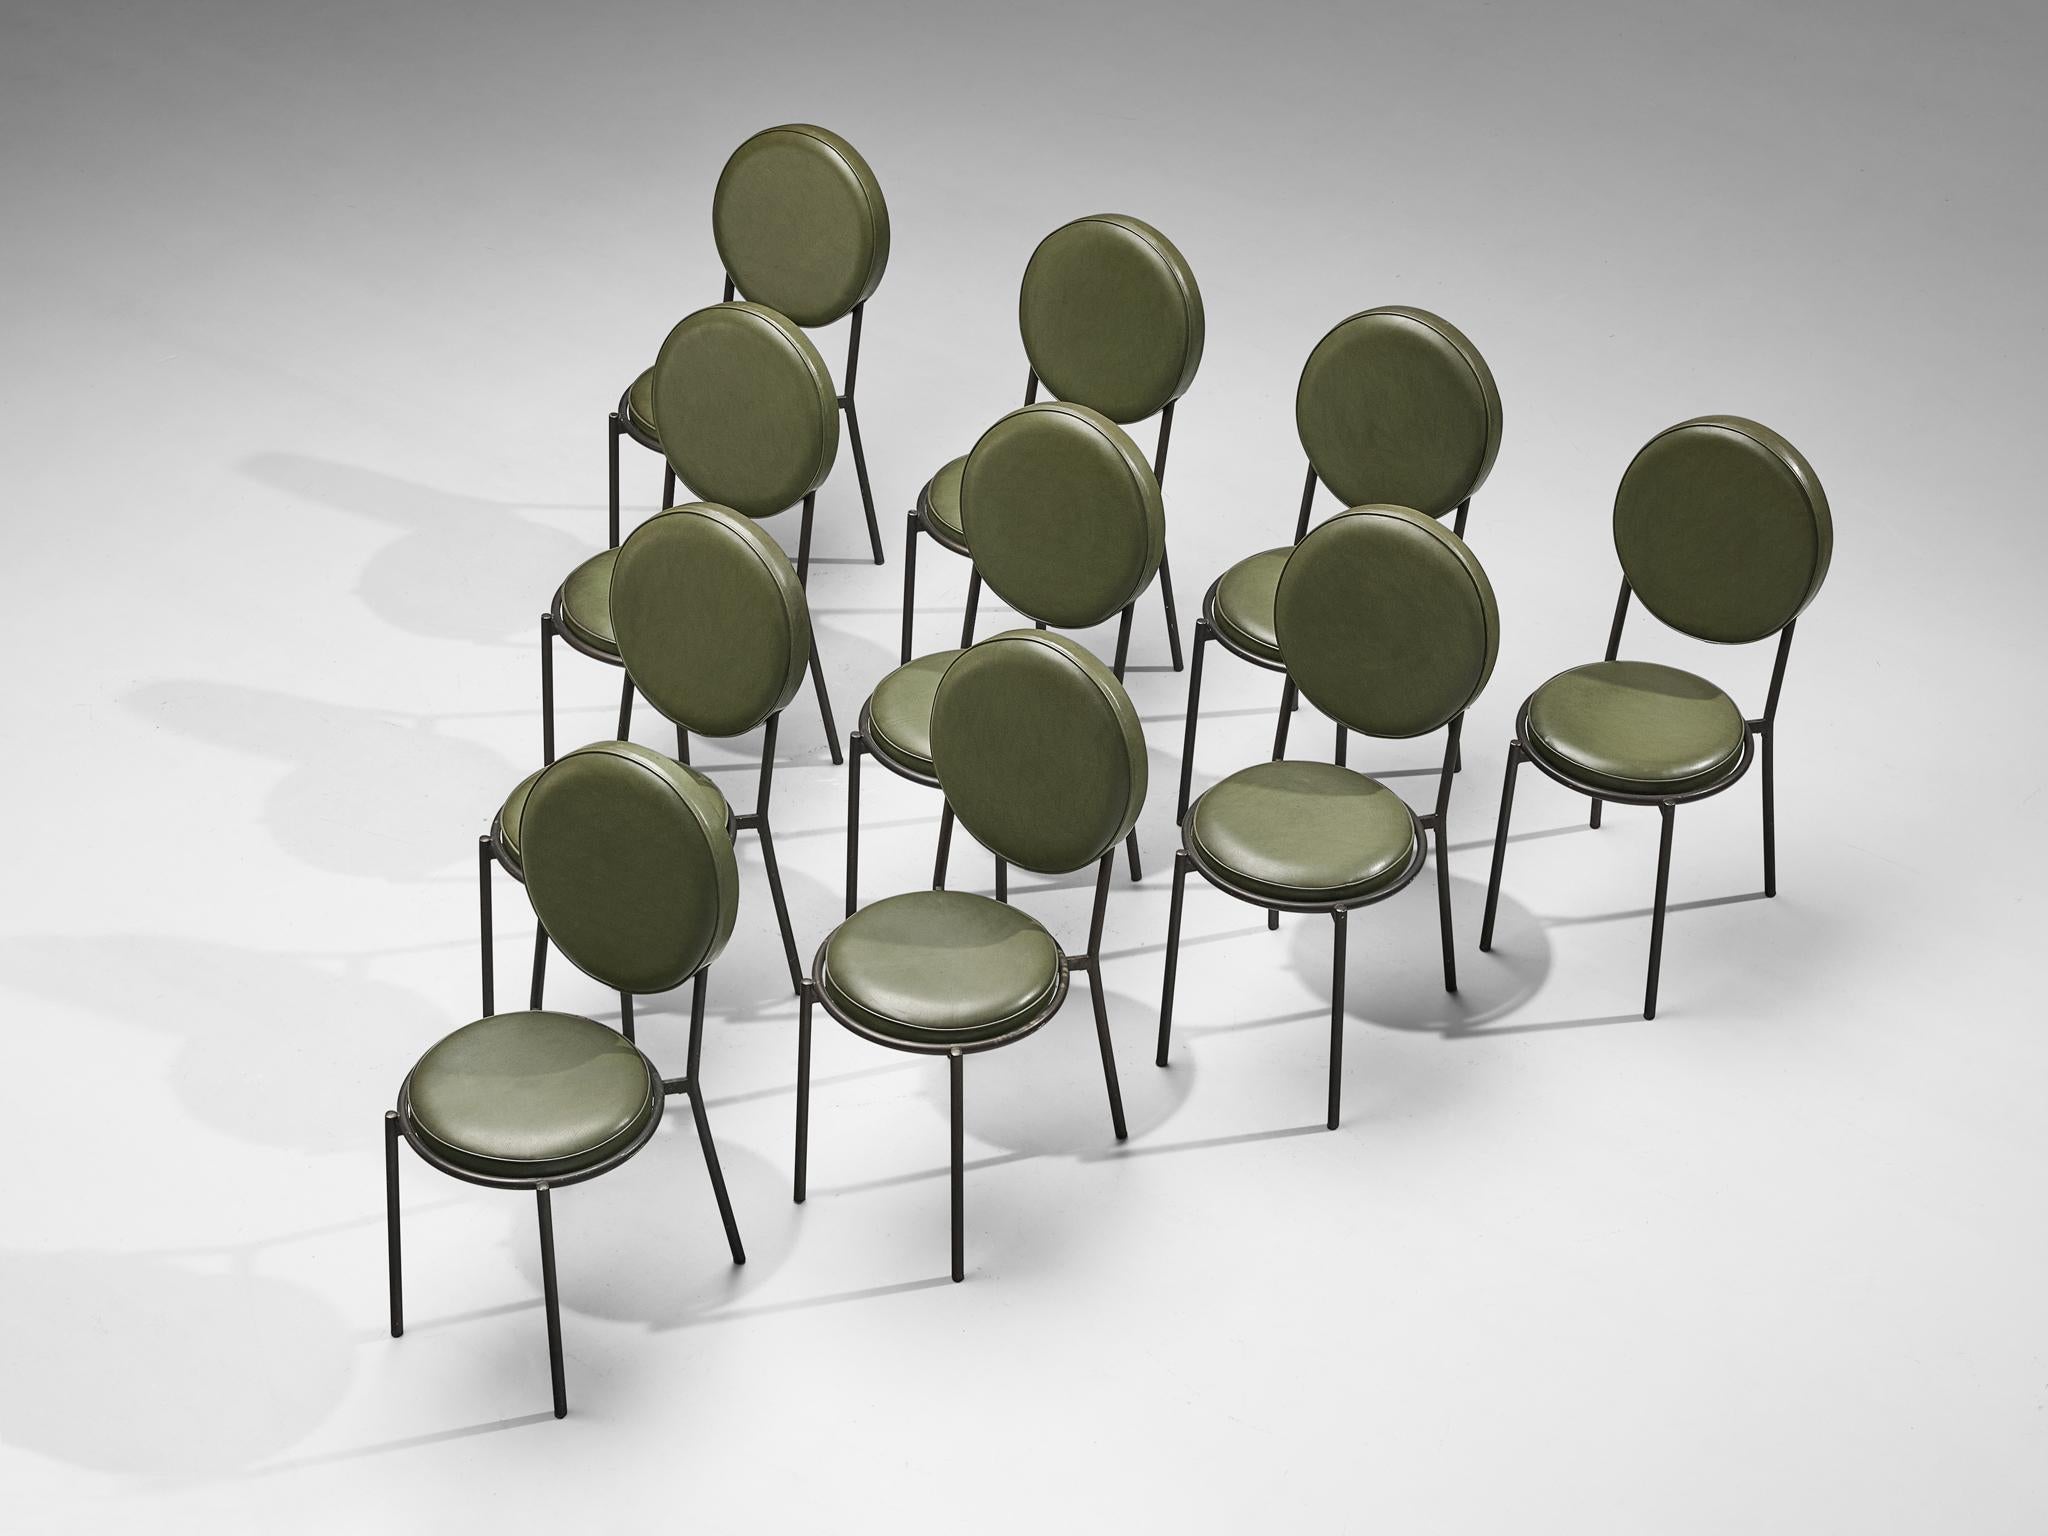 Ensemble de dix chaises de salle à manger, cuir, métal enduit, Italie, années 1970

Ces chaises de salle à manger exceptionnelles présentent un design artistique remarquable caractérisé par des formes exquises disposées dans une composition